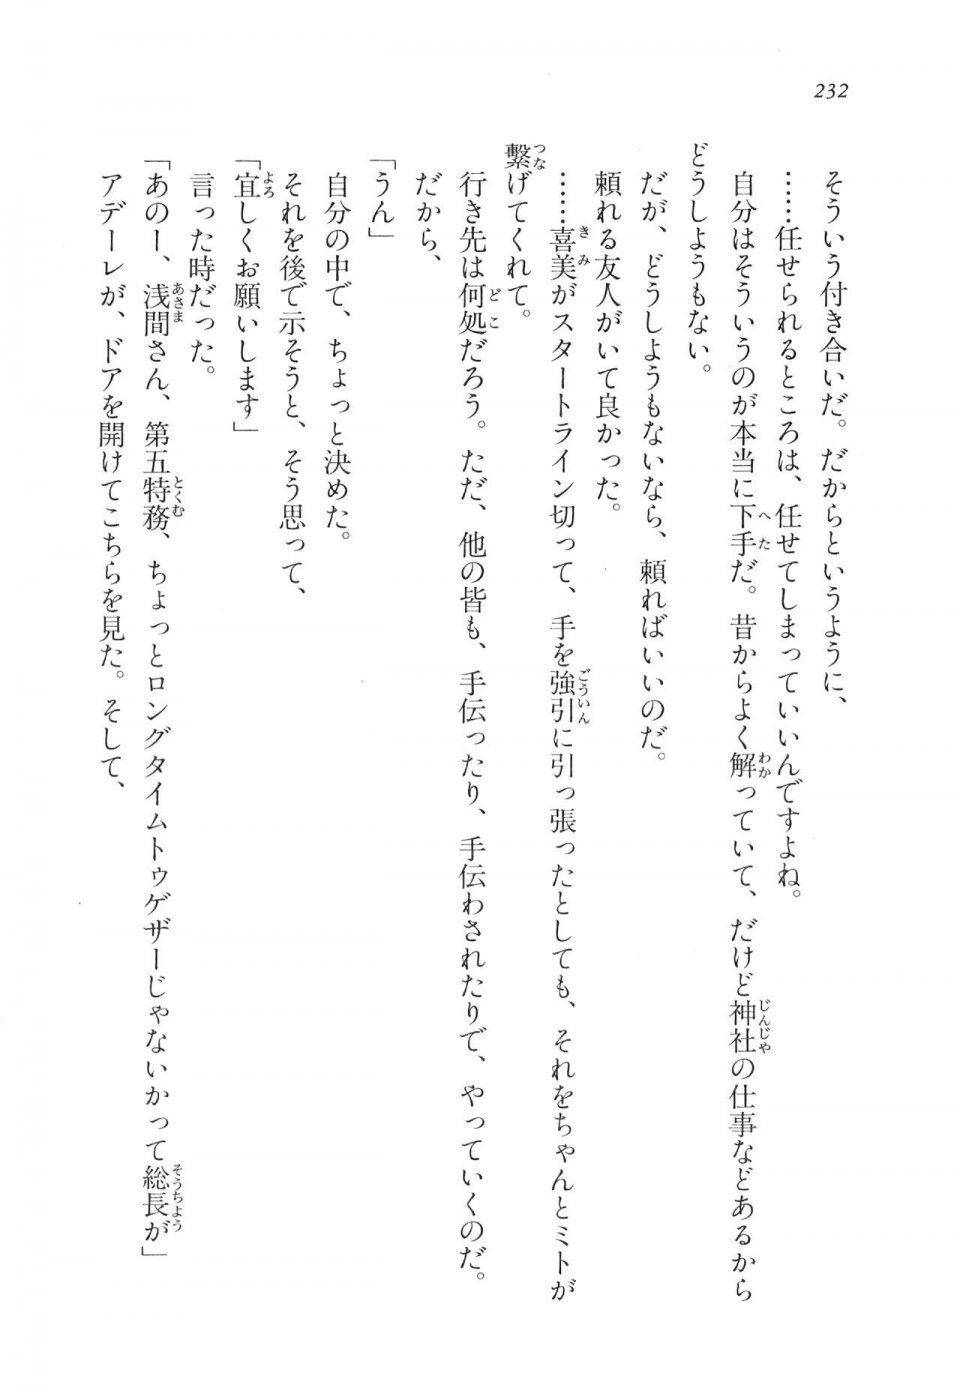 Kyoukai Senjou no Horizon LN Vol 11(5A) - Photo #232